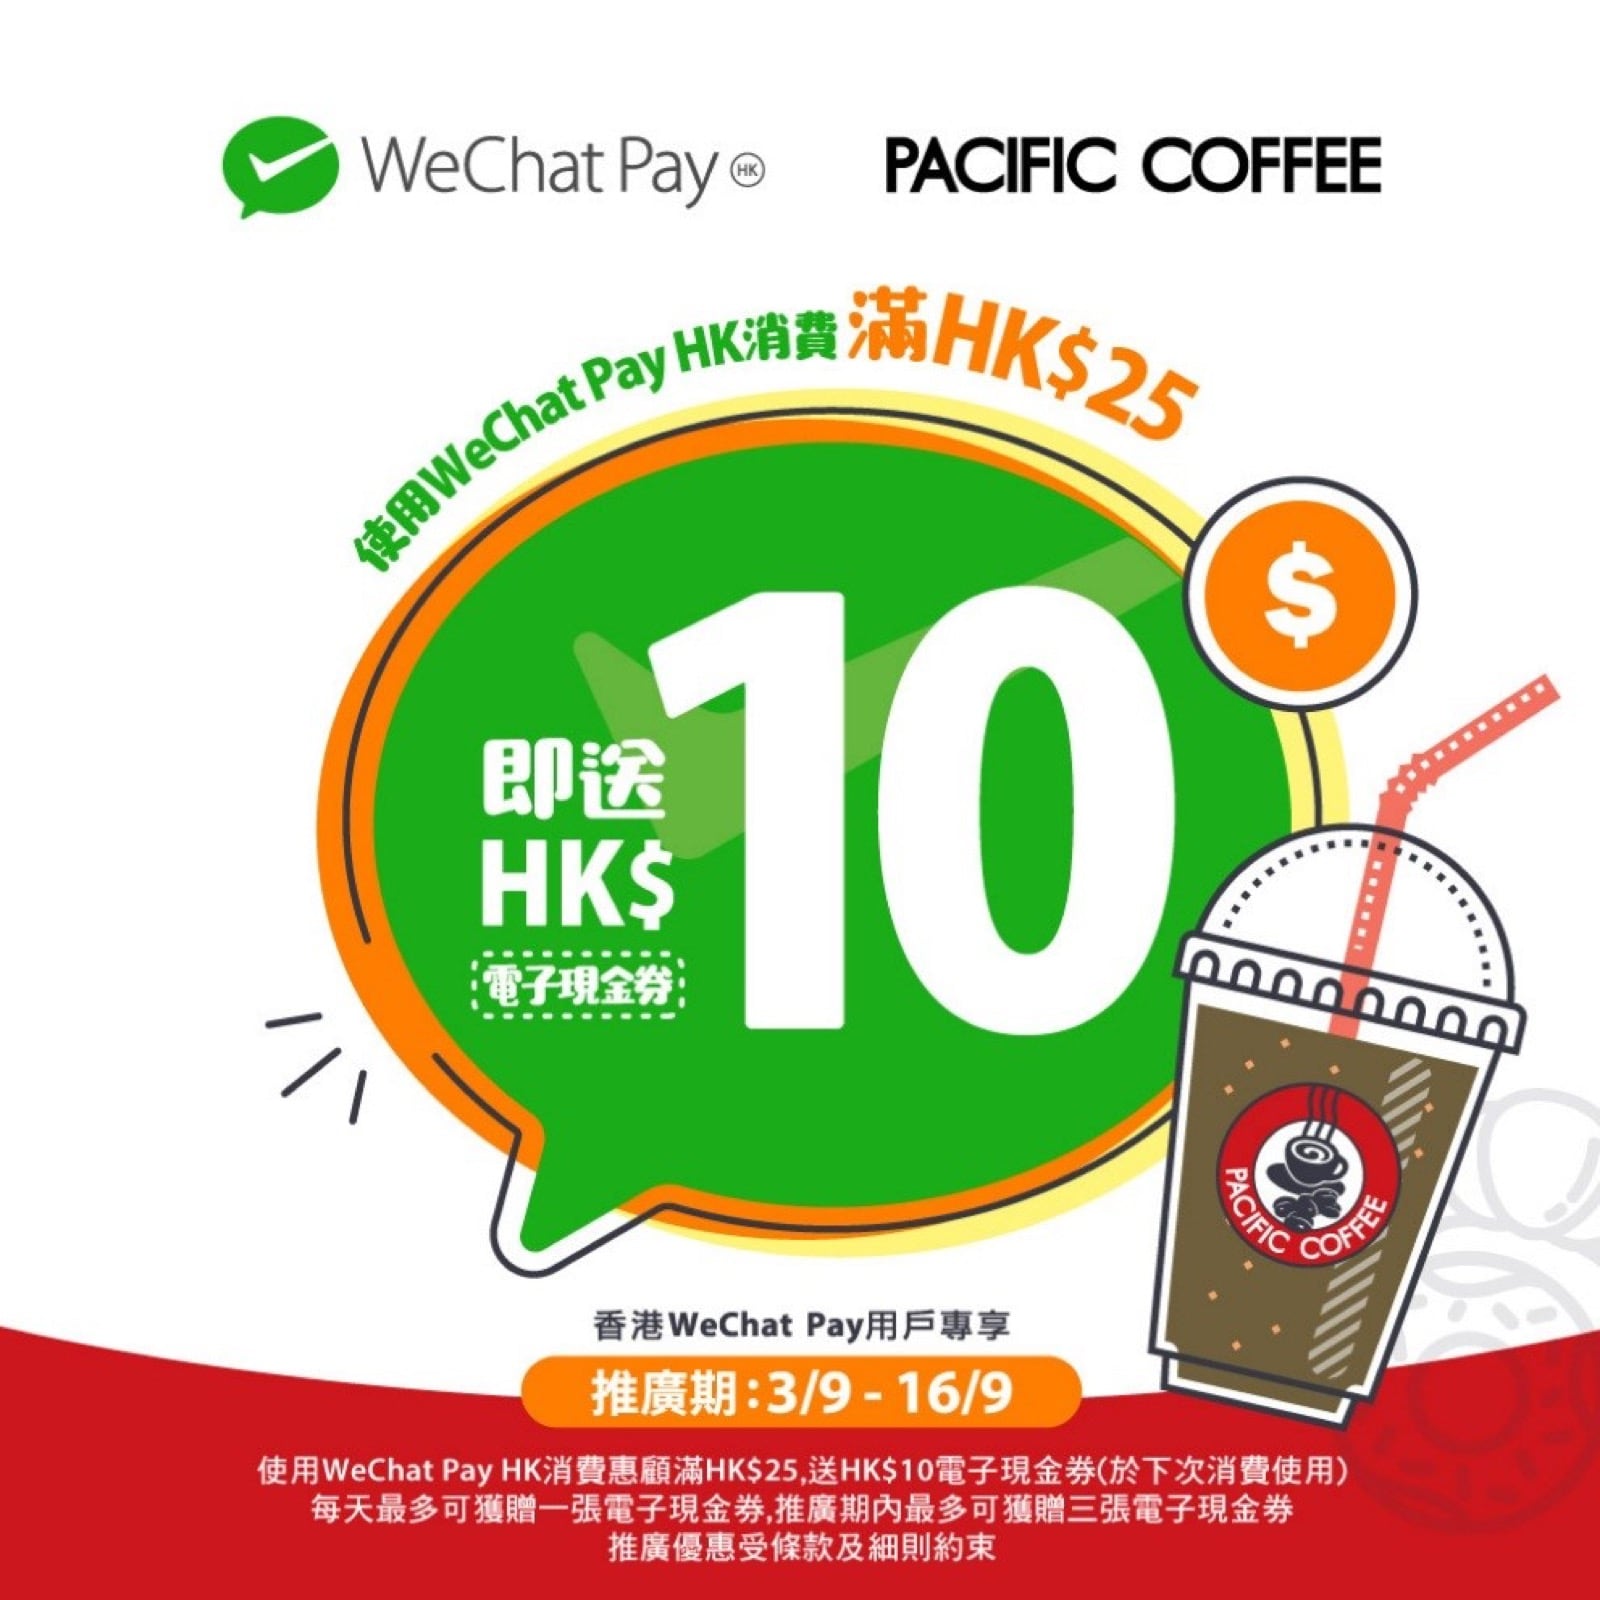 精選慳家人優惠推介：WeChat Pay HK x Pacific Coffee優惠：滿HK$25即送 HK$10電子現金券＞即刻去睇睇優惠詳情啦！